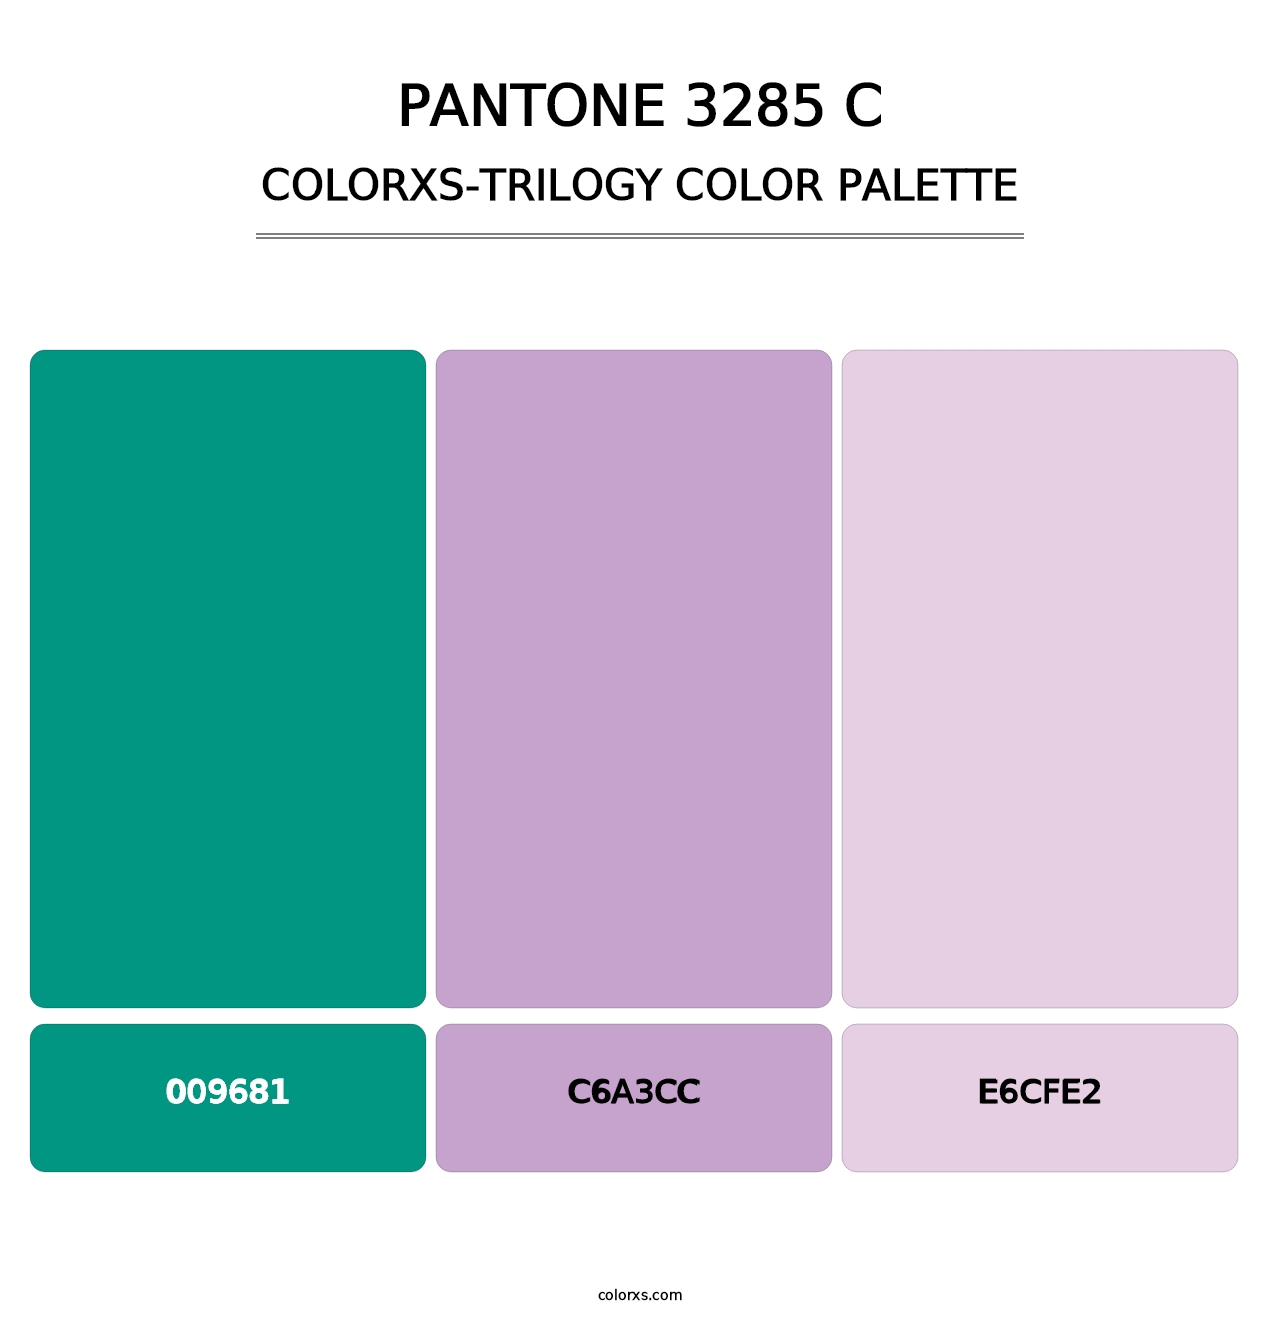 PANTONE 3285 C - Colorxs Trilogy Palette